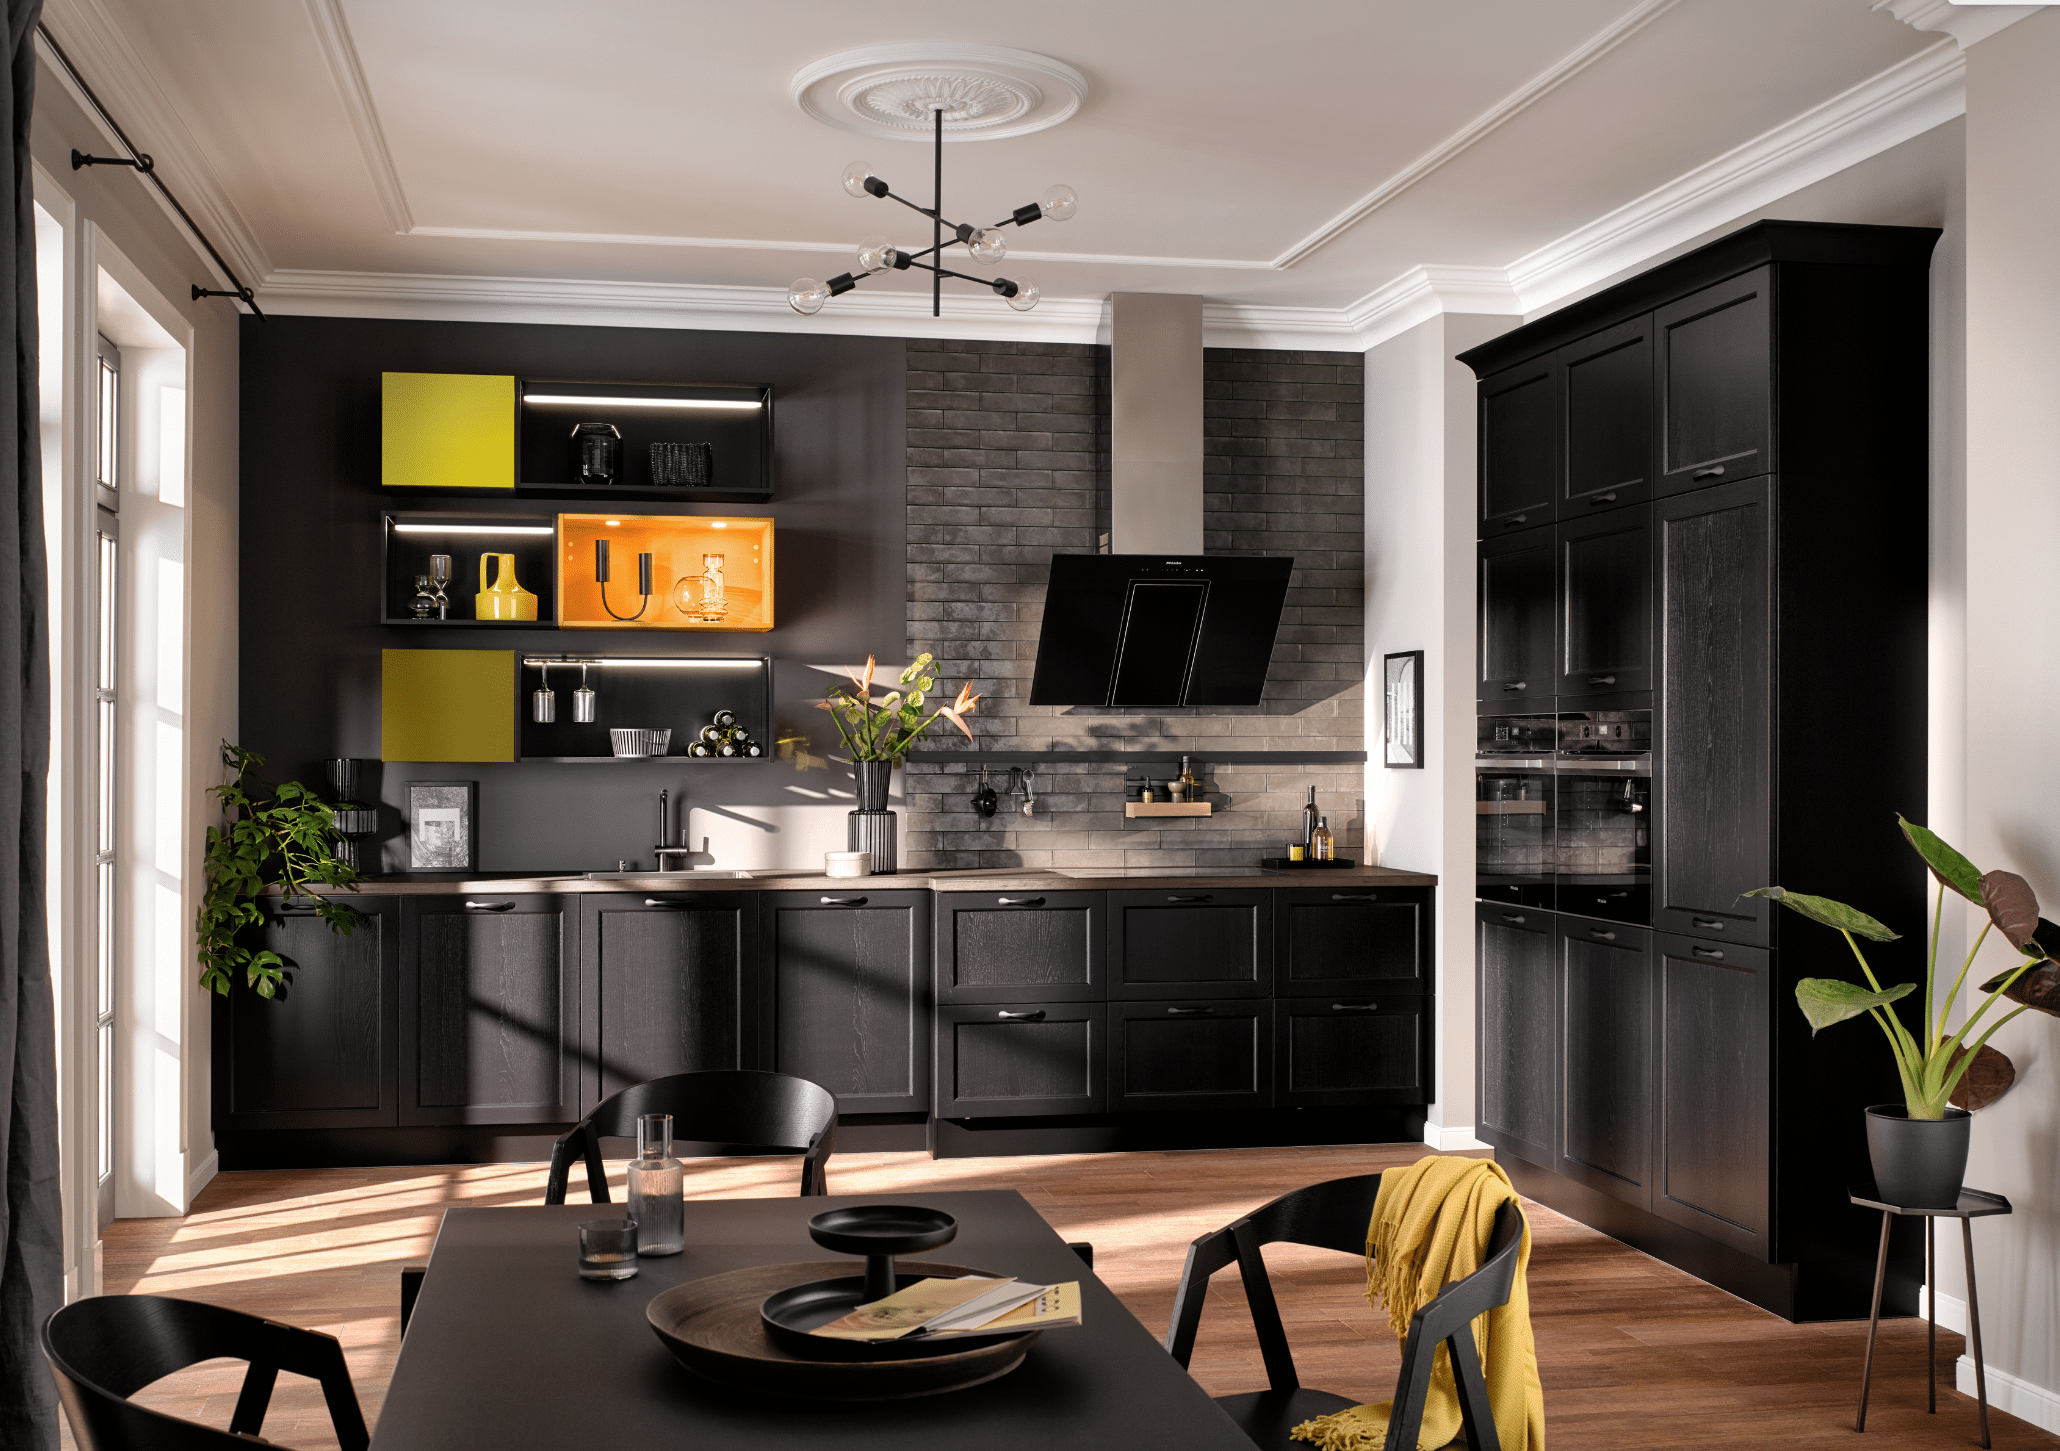 BÖHM MÖBEL zeigt eine schwarze Häcker Küche mit orangen und gelben Hängeschränken, Dunstabzug und Esstisch.